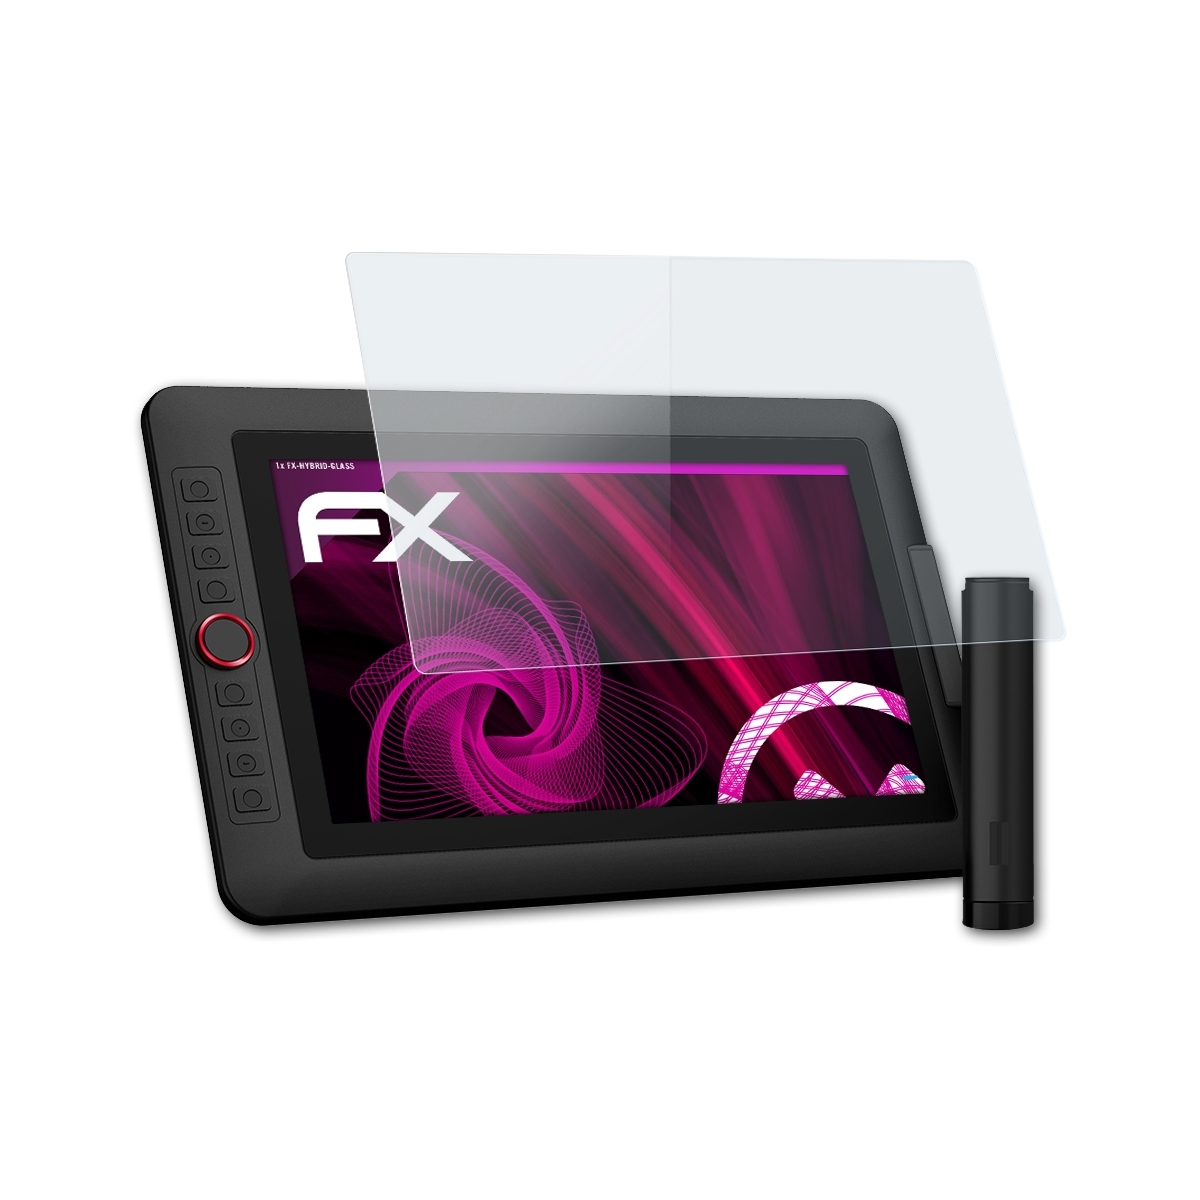 FX-Hybrid-Glass XP-PEN Artist 13.3 Schutzglas(für Pro) ATFOLIX